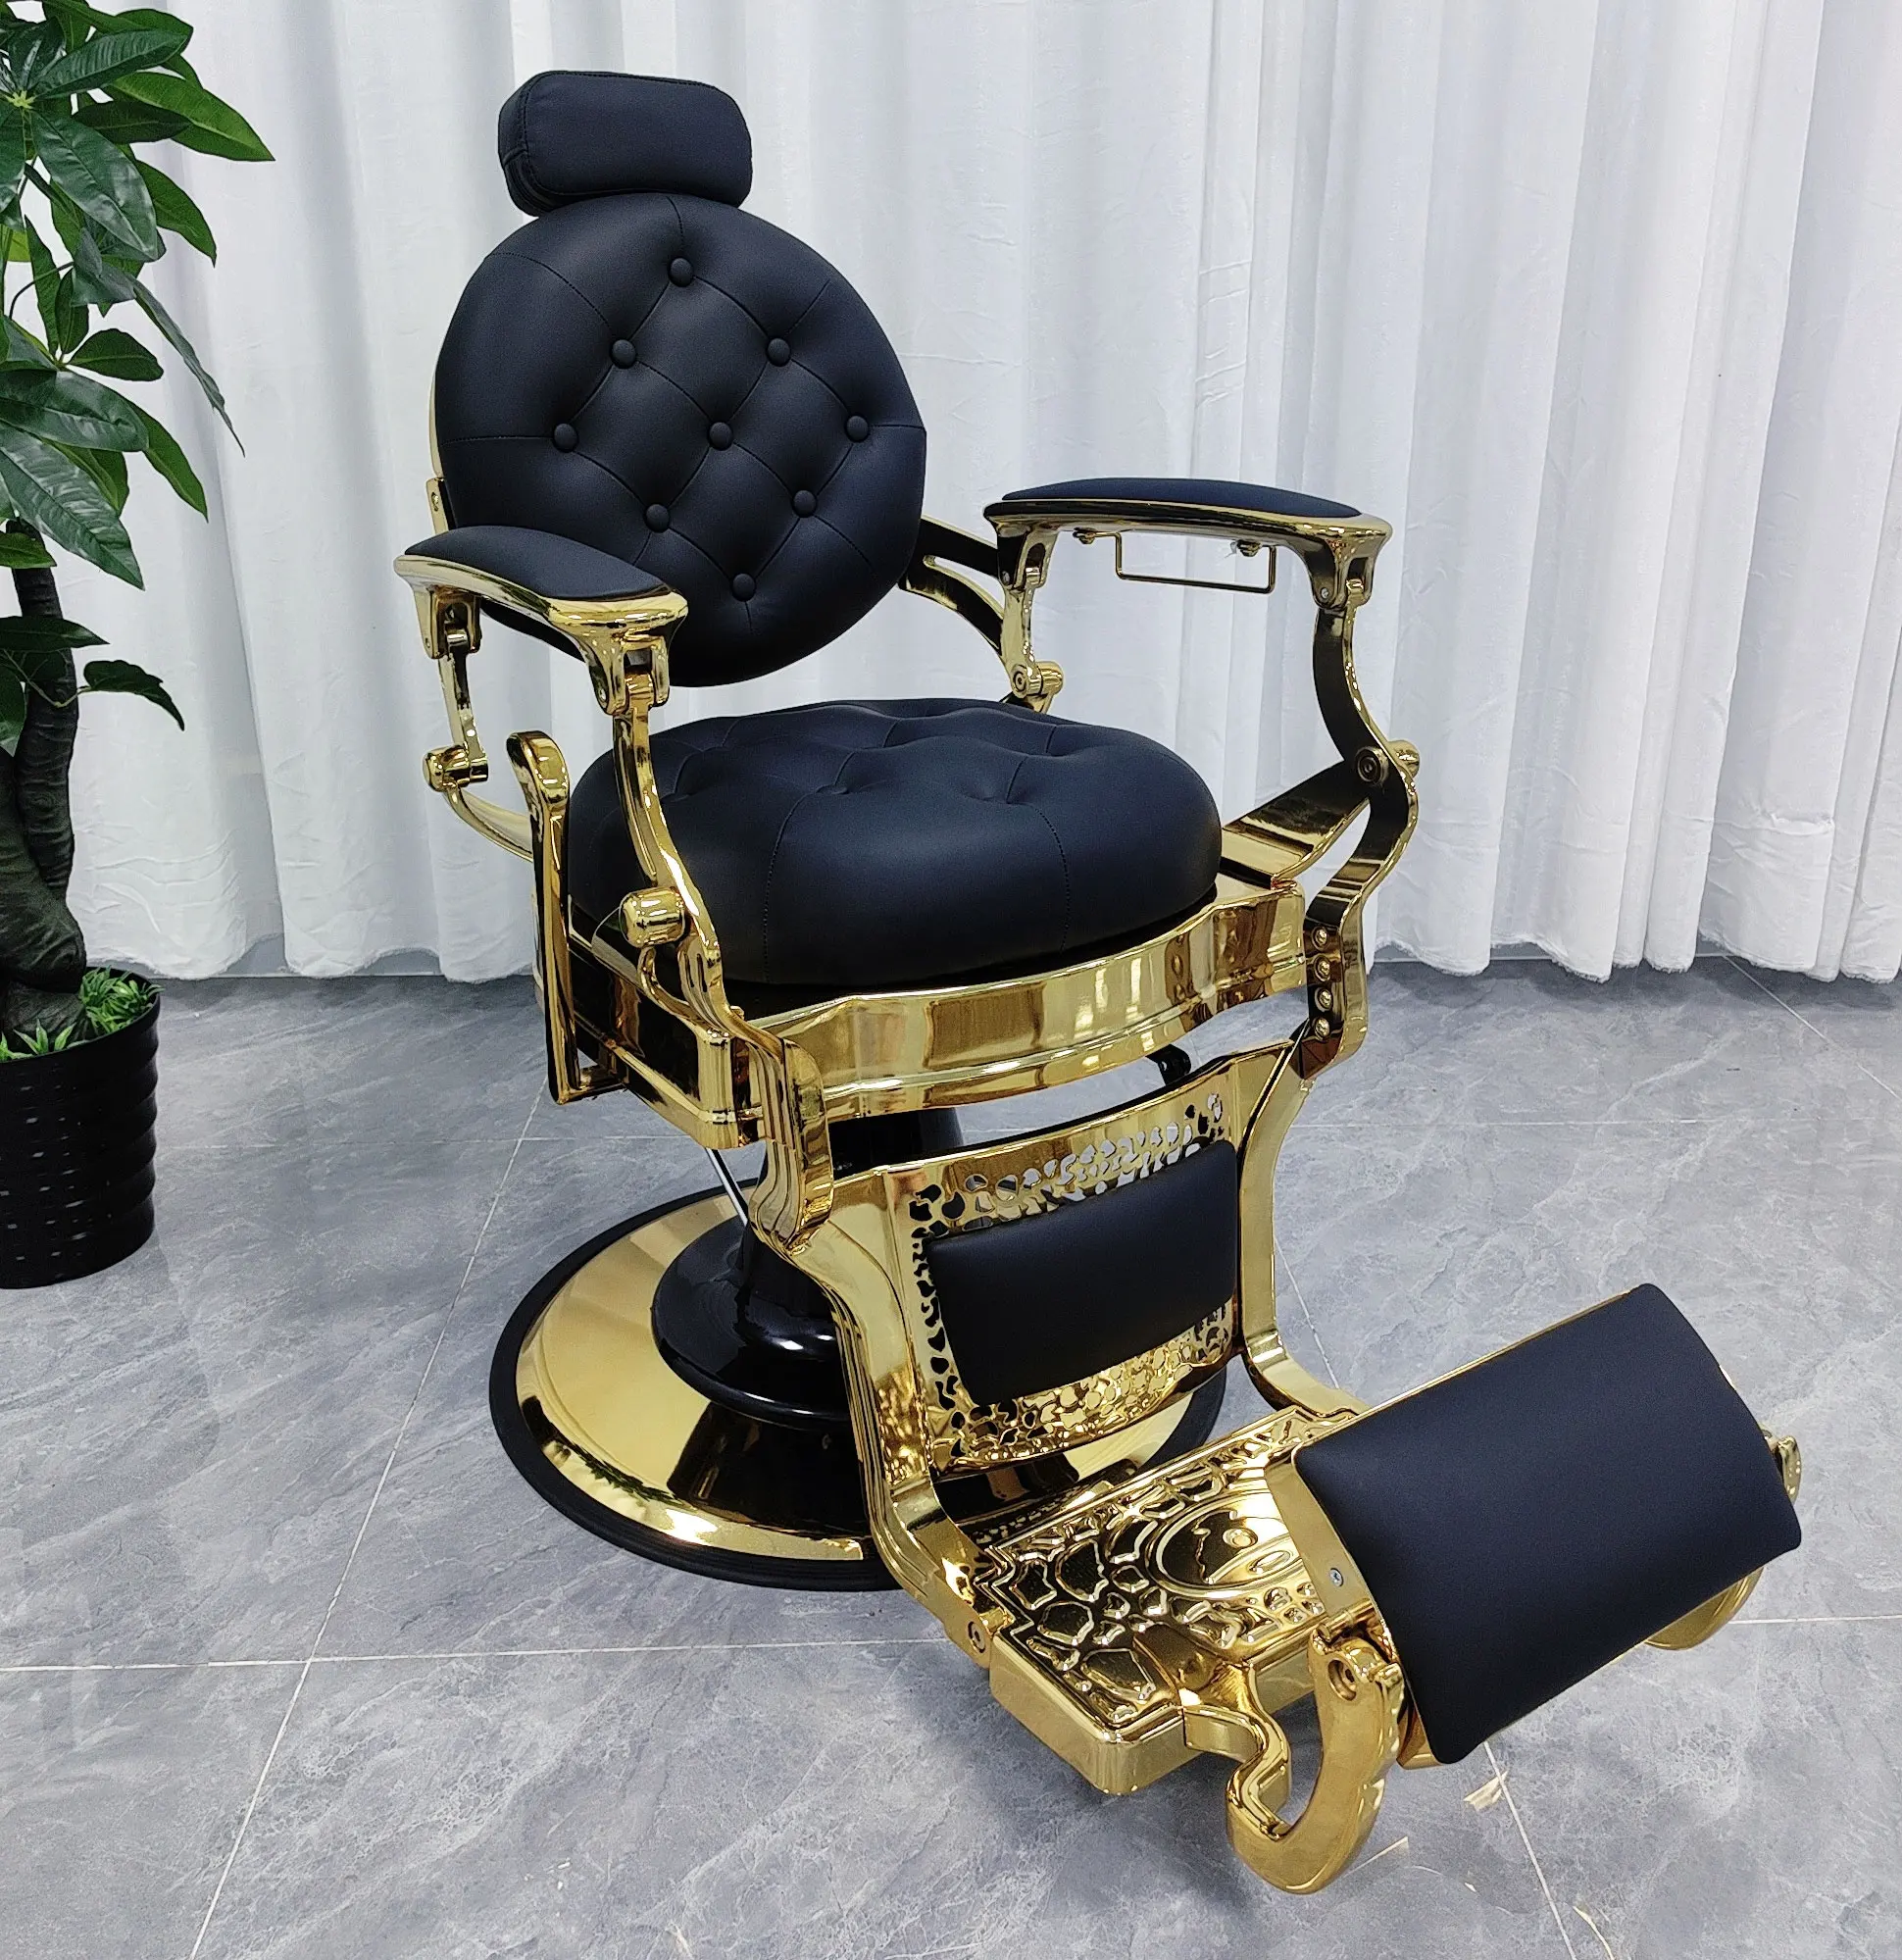 Lujo vintage Marco de oro de cuero sintético muebles de salón de peluquería modelado Silla de peluquero sillas de peluquería para hombres